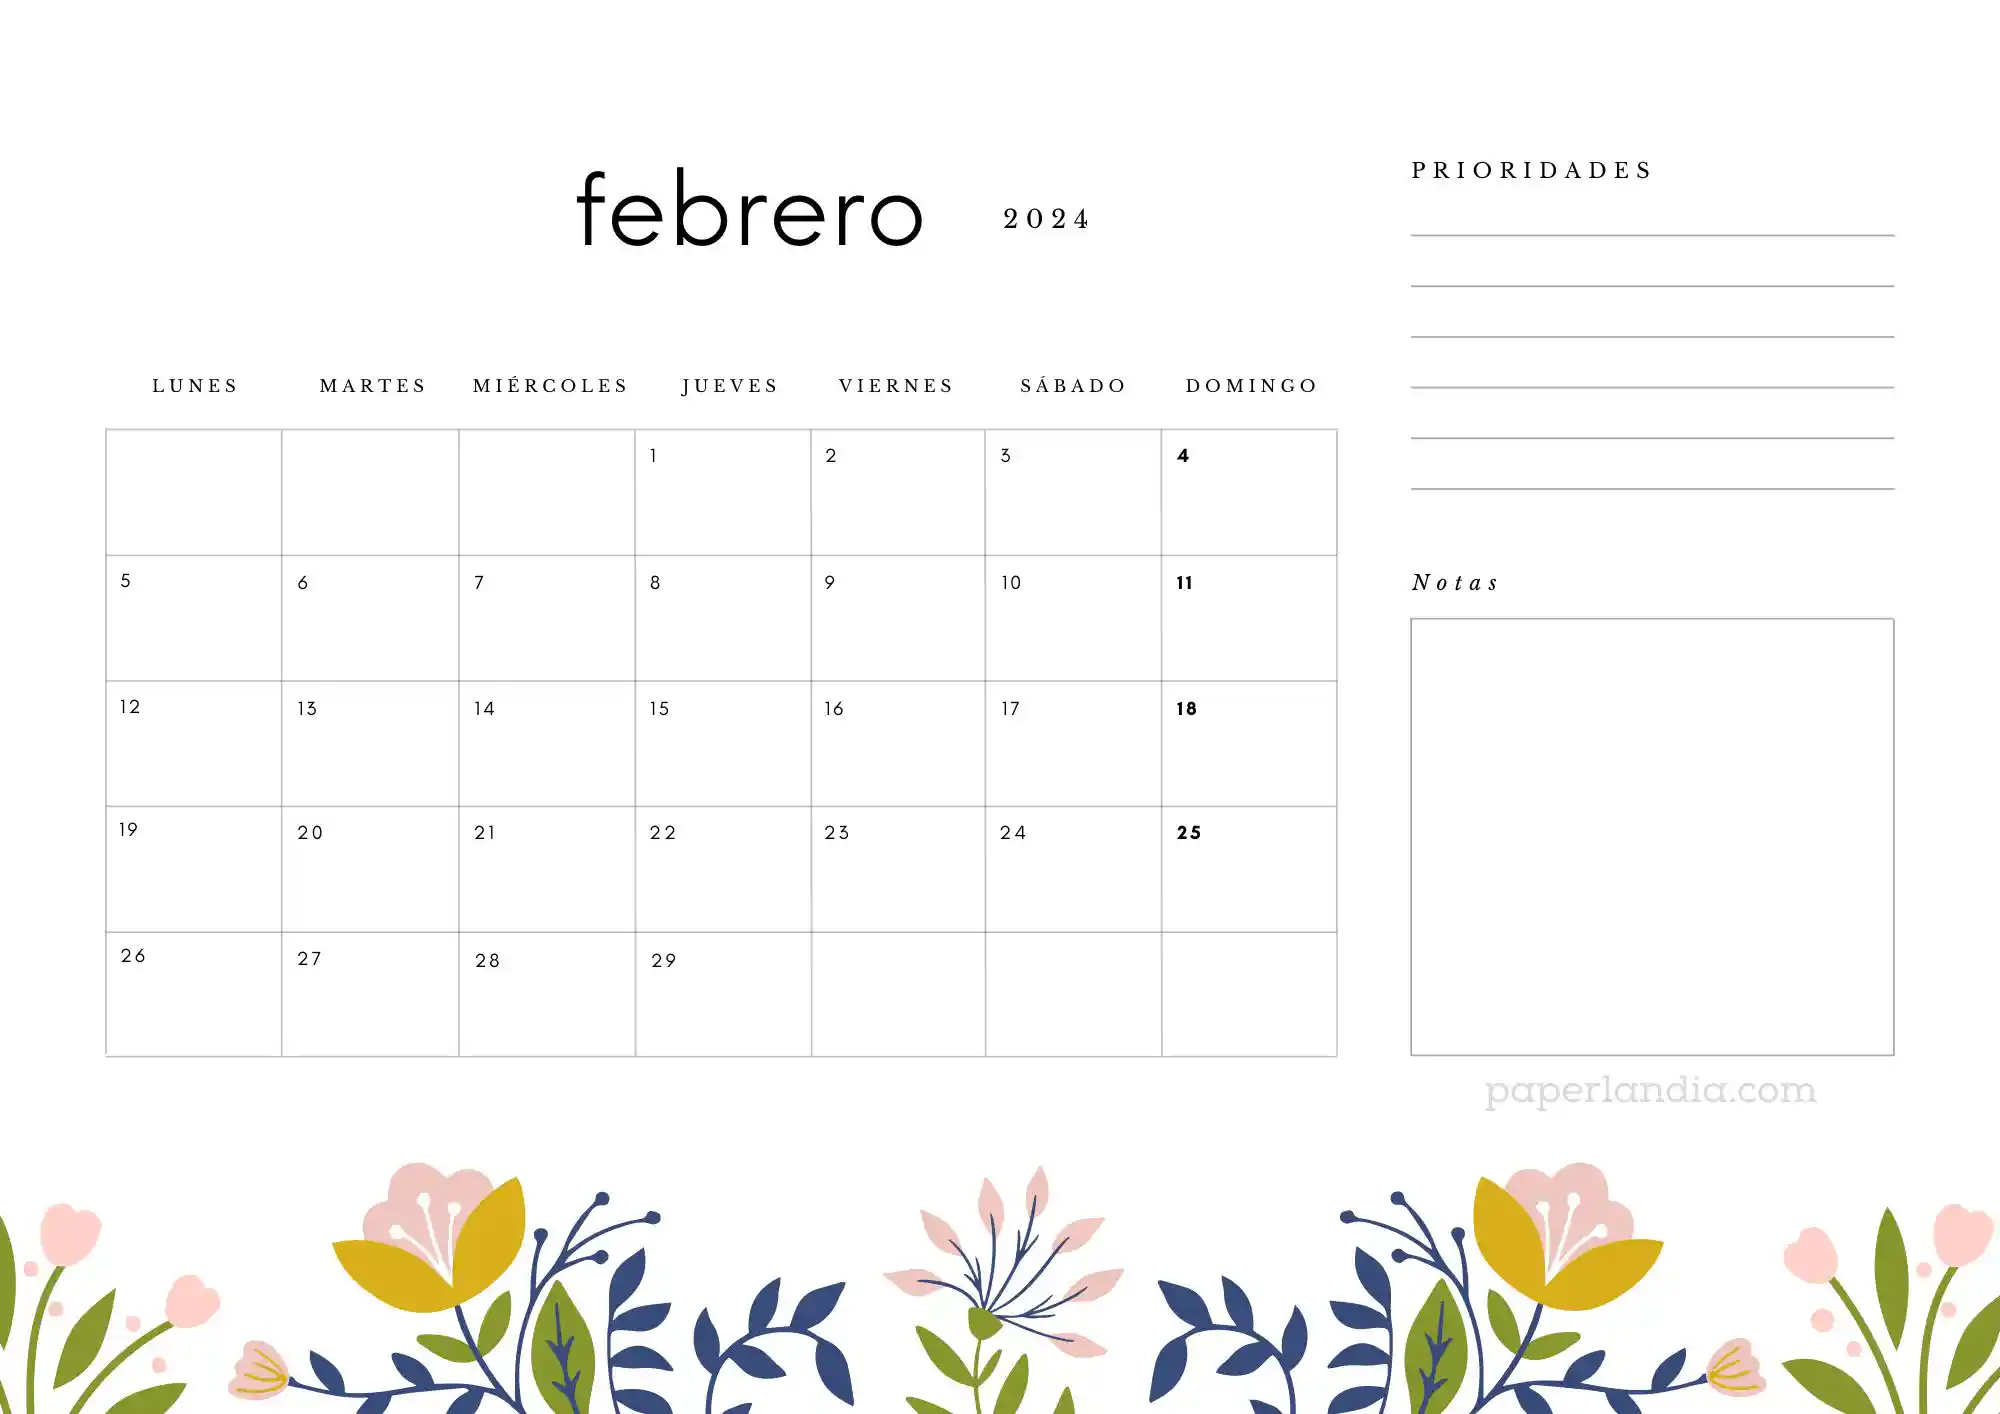 Calendario febrero 2024 horizontal con prioridades notas y flores escandinavas